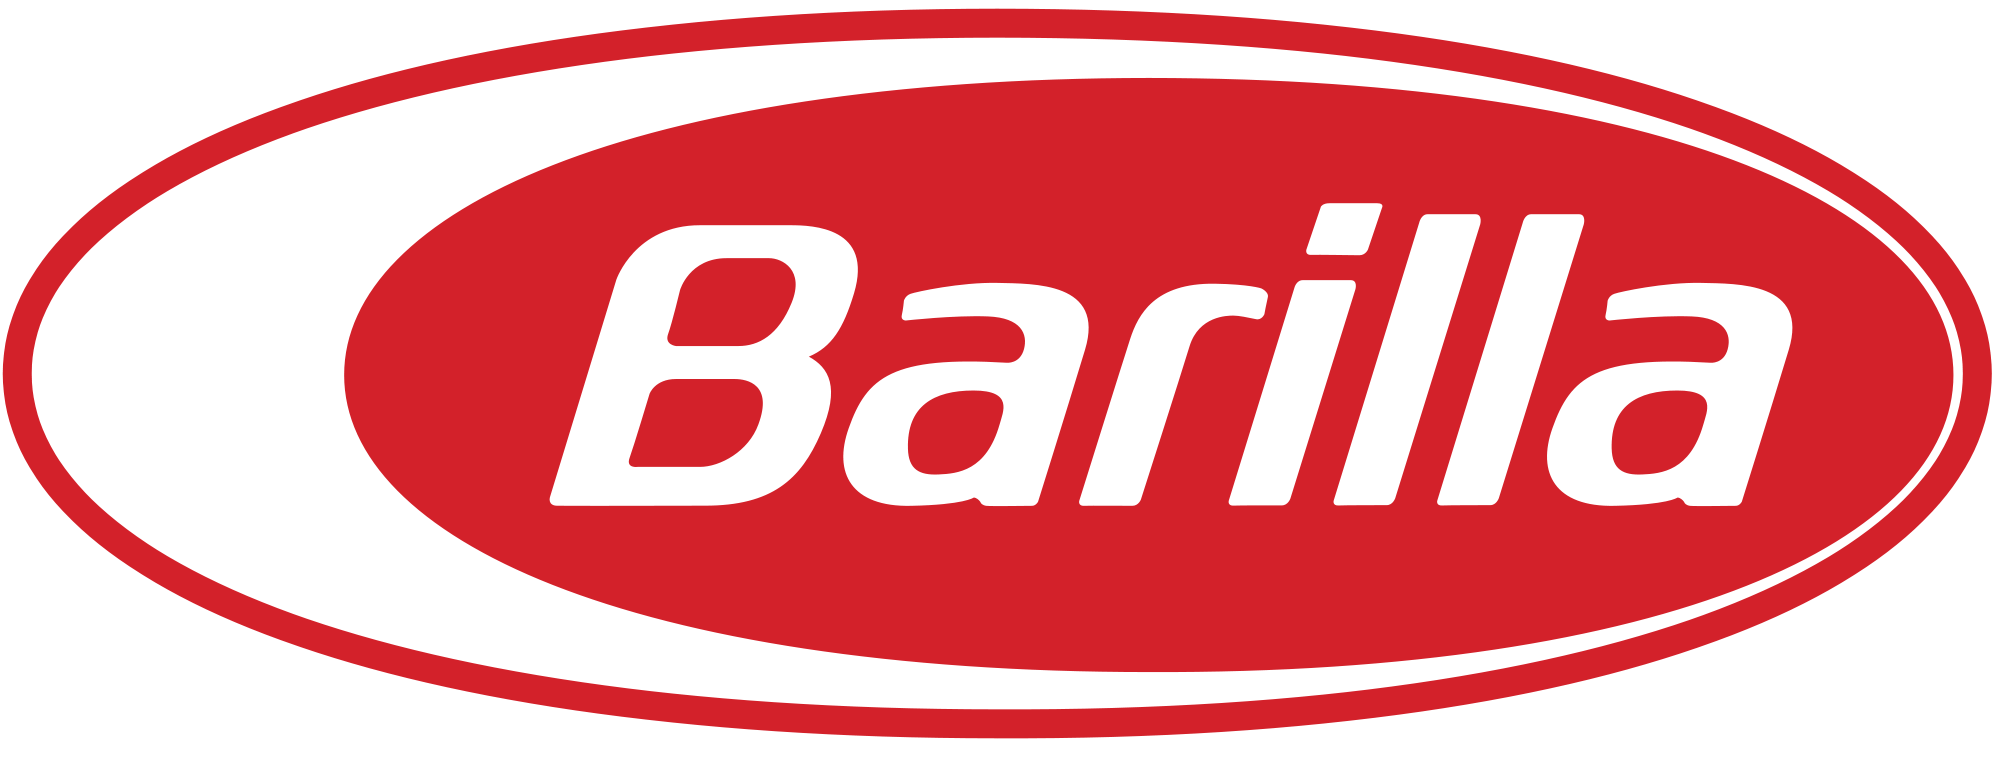 Barilla Logo - File:Barilla pasta logo.svg - Wikimedia Commons